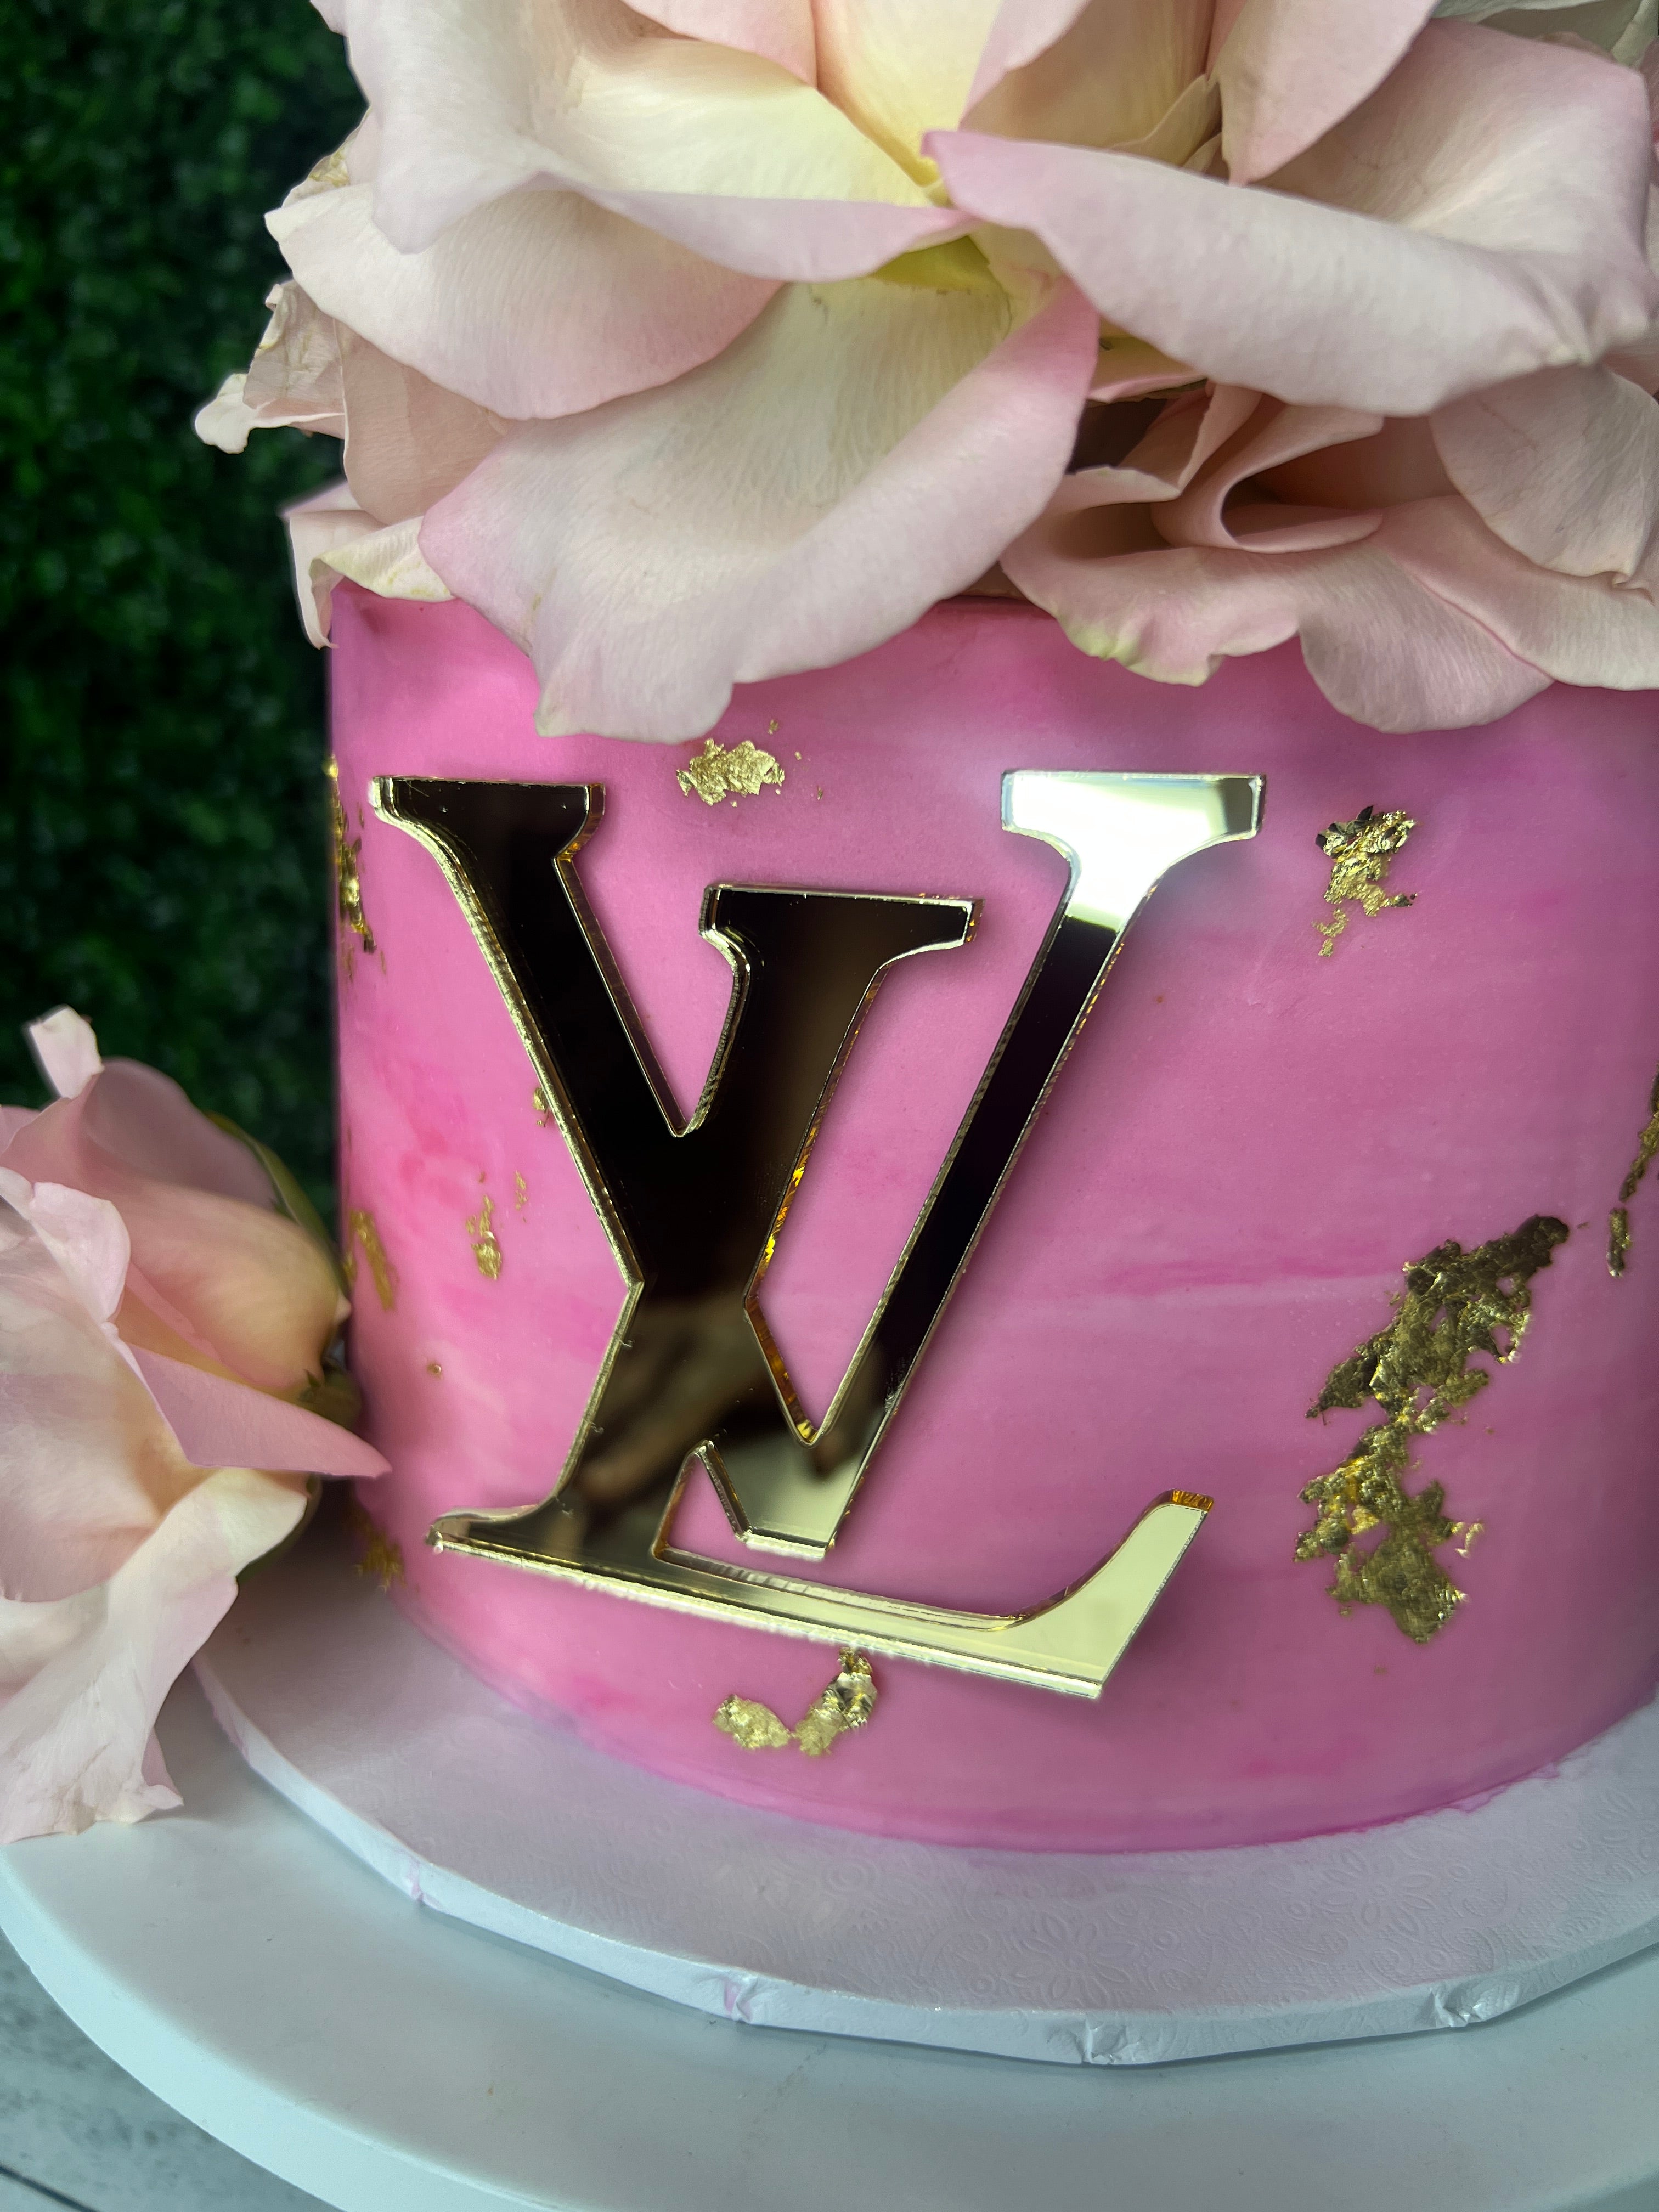 Louis Vuitton Cake - Flair Cake Boutique